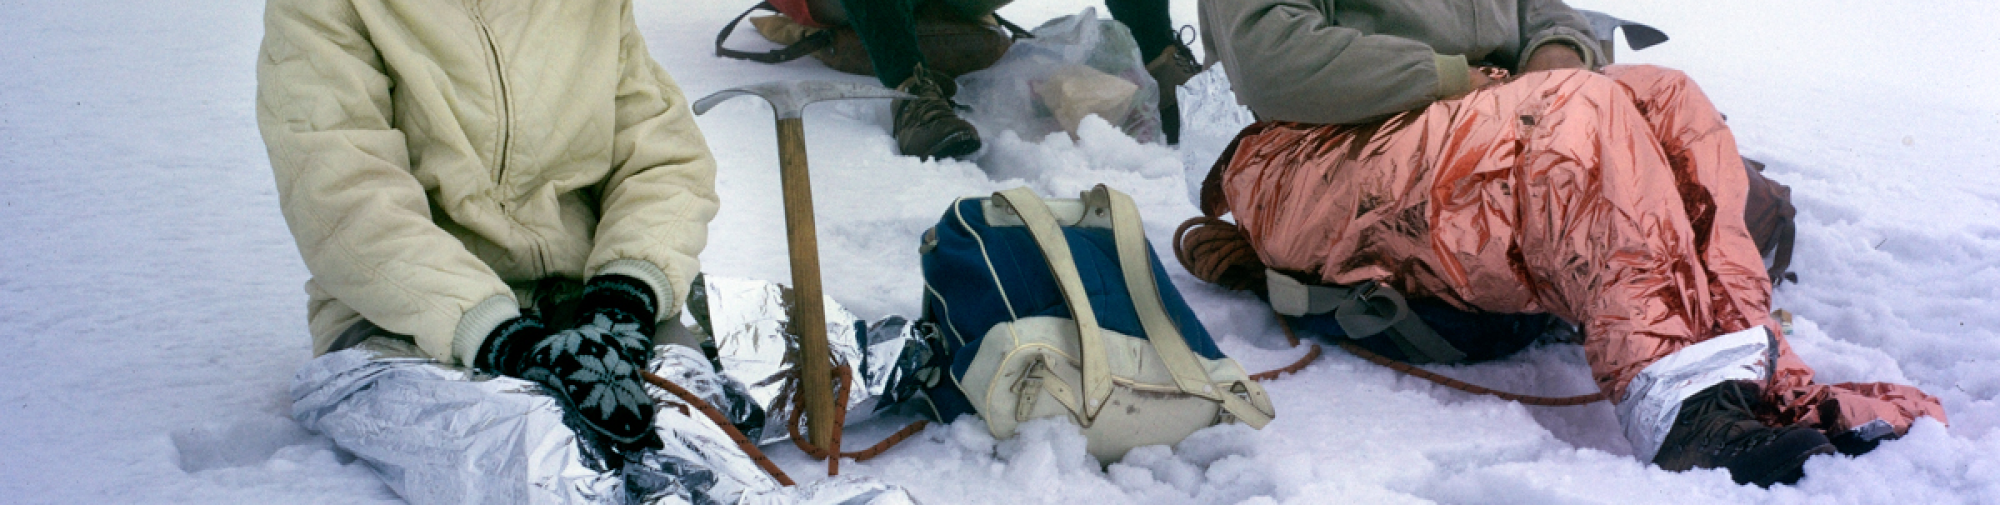 Die Beine in Folie eingewickelt, ruht sich die Seilschaft im Schnee aus Schweiz, 1966 Fotograf:in: Dölf Reist © Alpines Museum der Schweiz